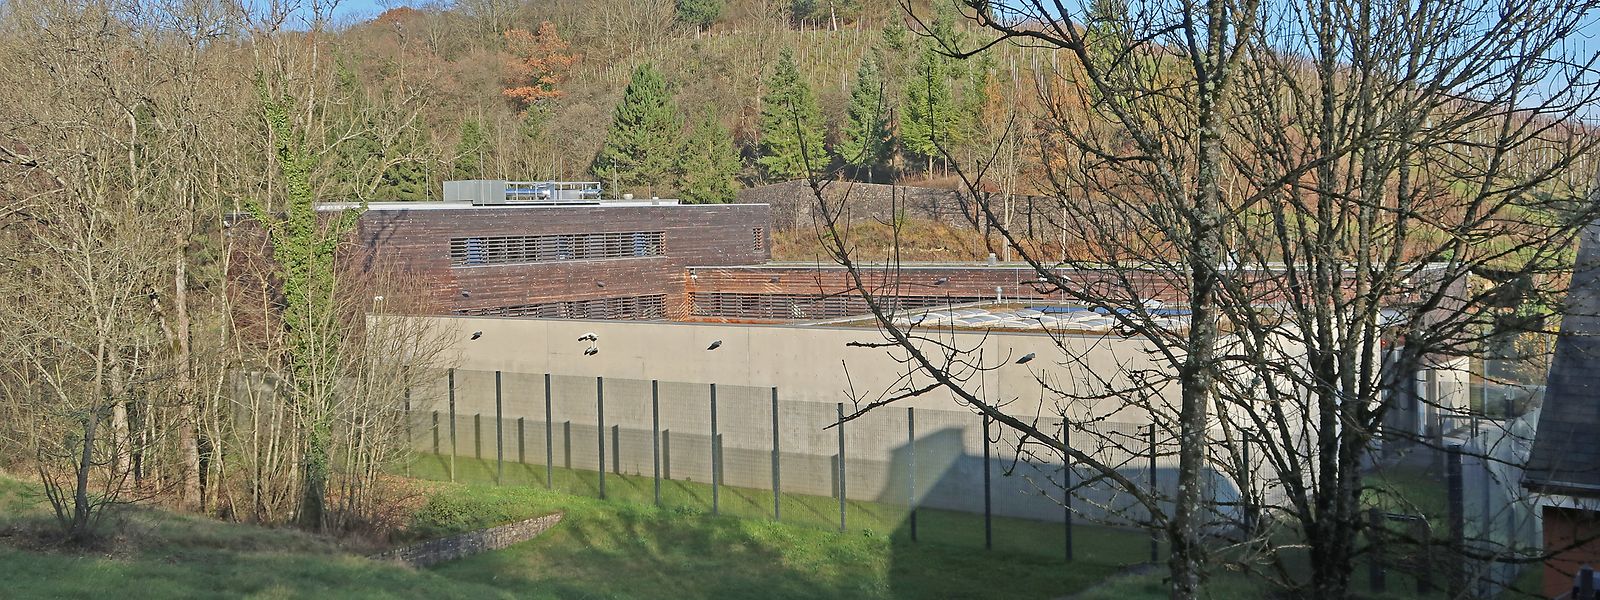 Das Gebäude der Unisec in Dreiborn ist mit hohen Mauern und Überwachungskameras gesichert.